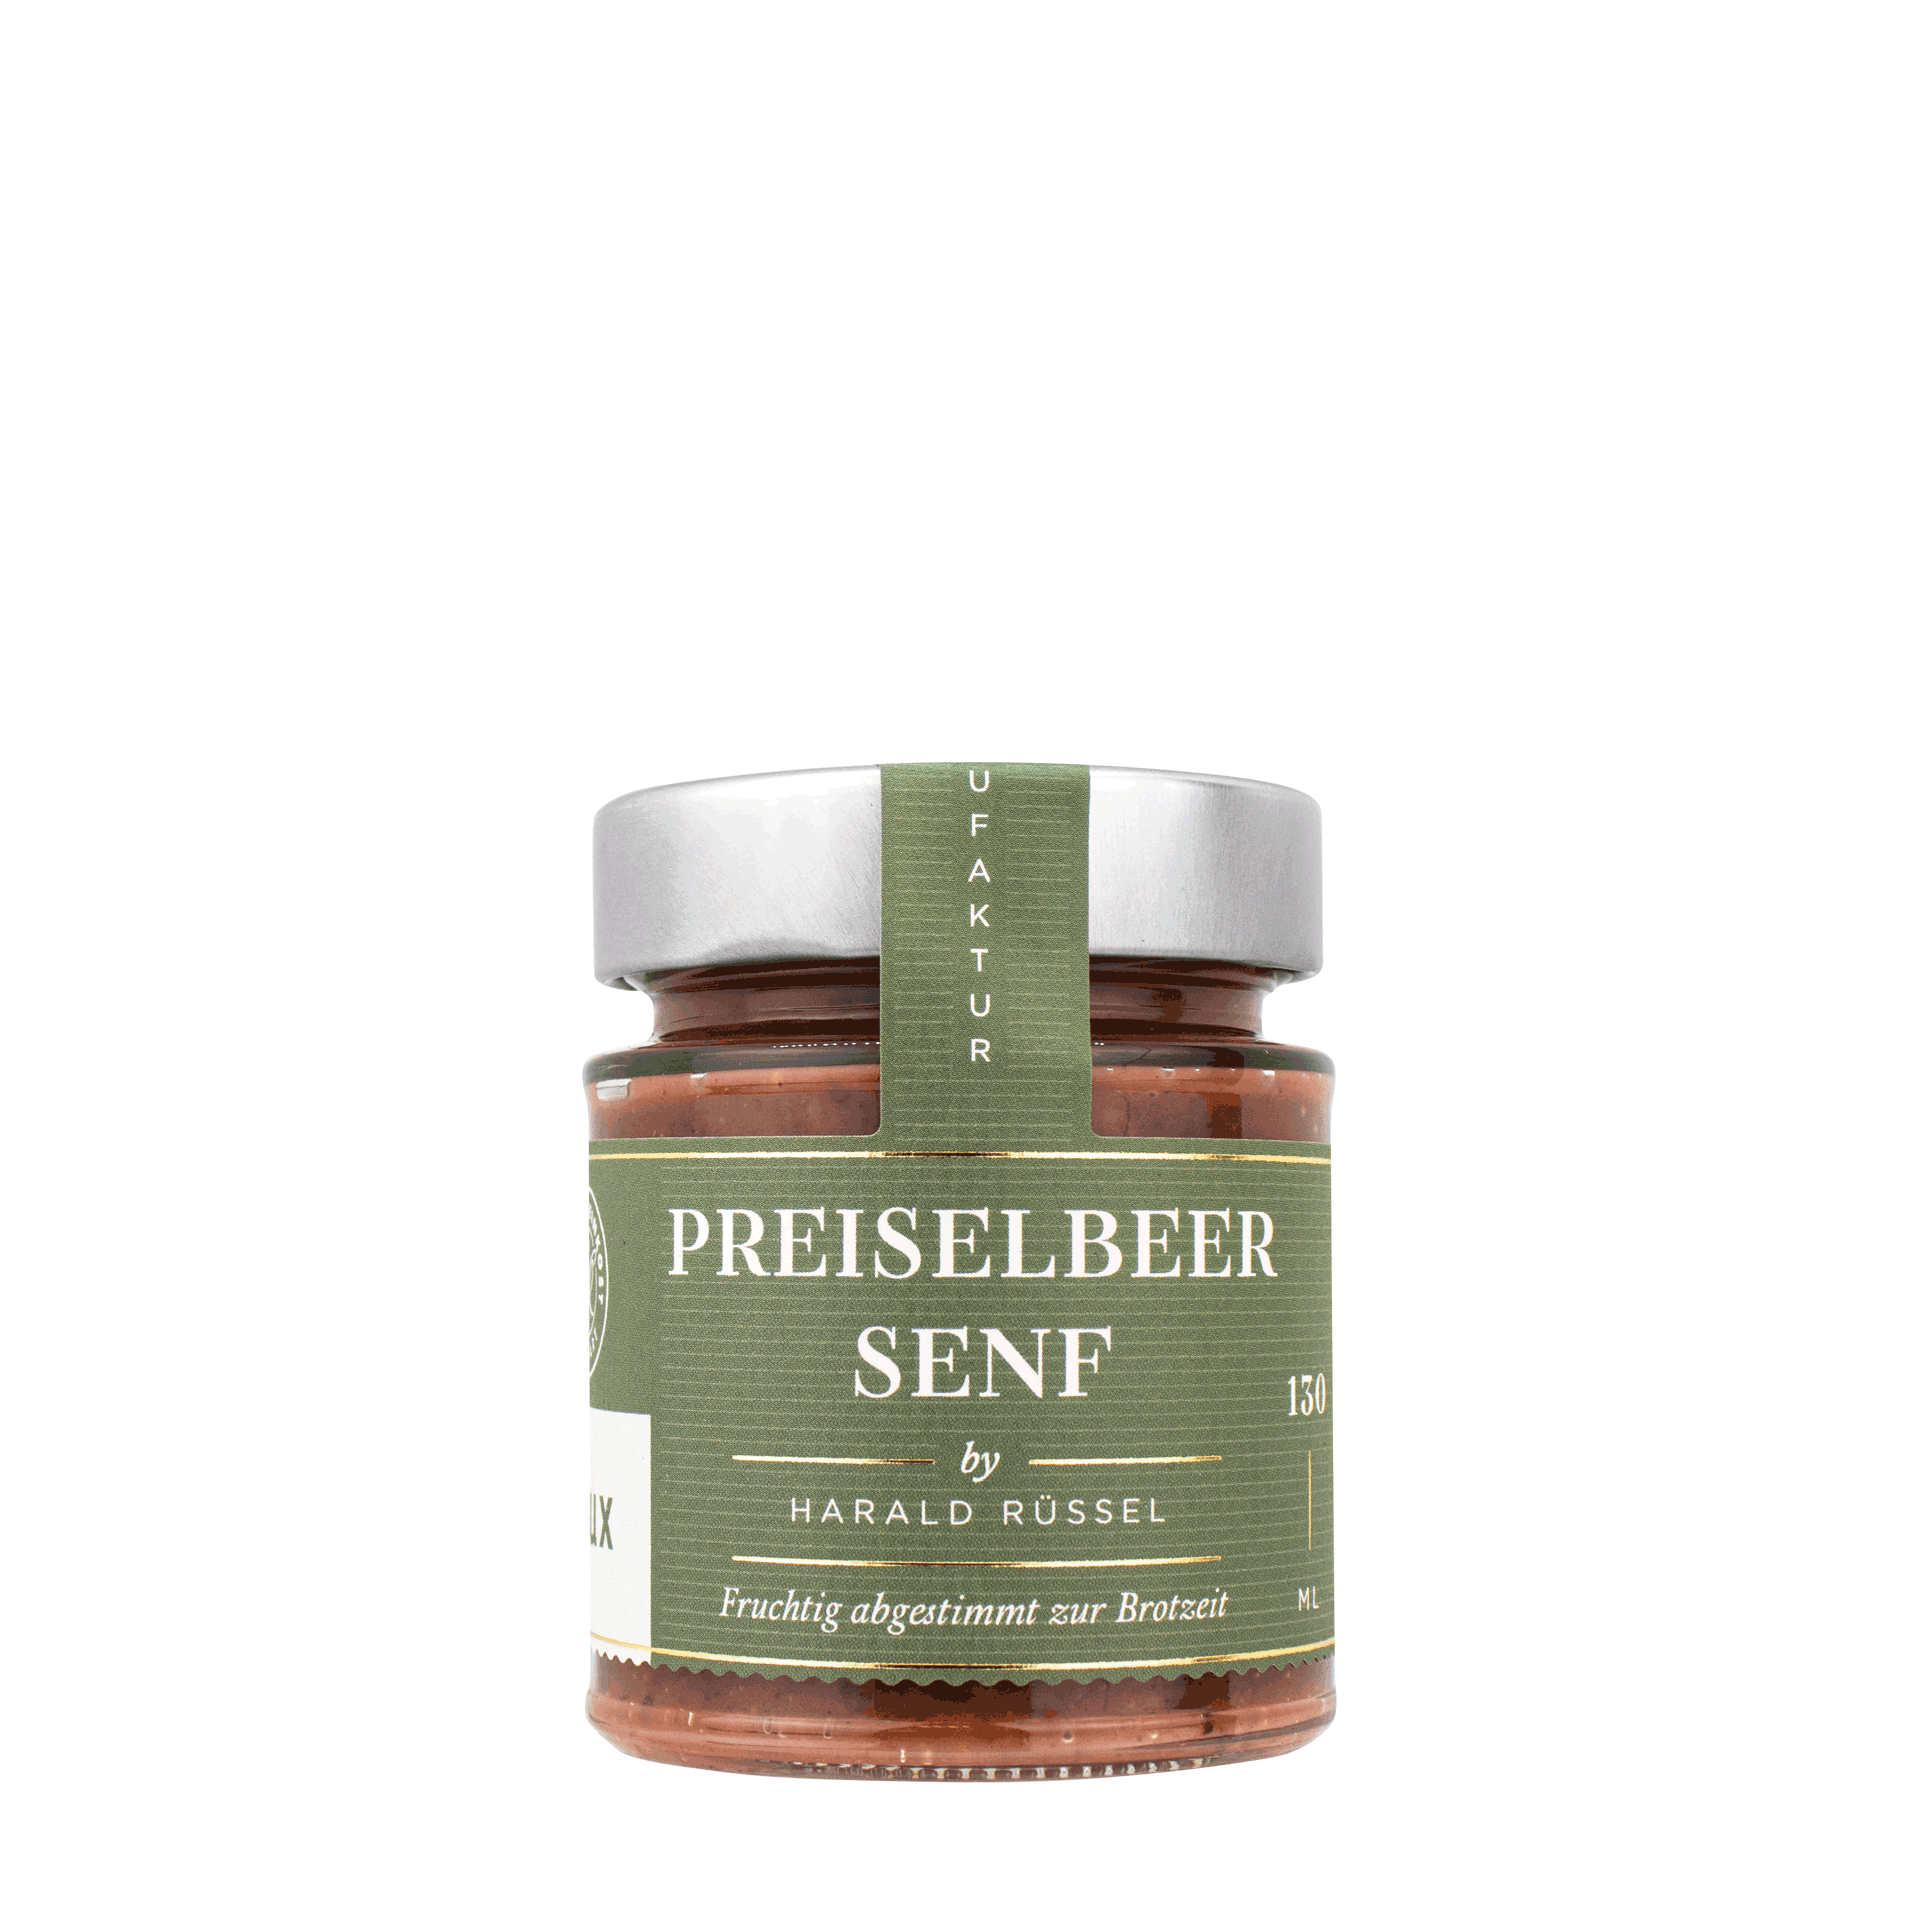 Preiselbeer Senf by Harald Rüssel